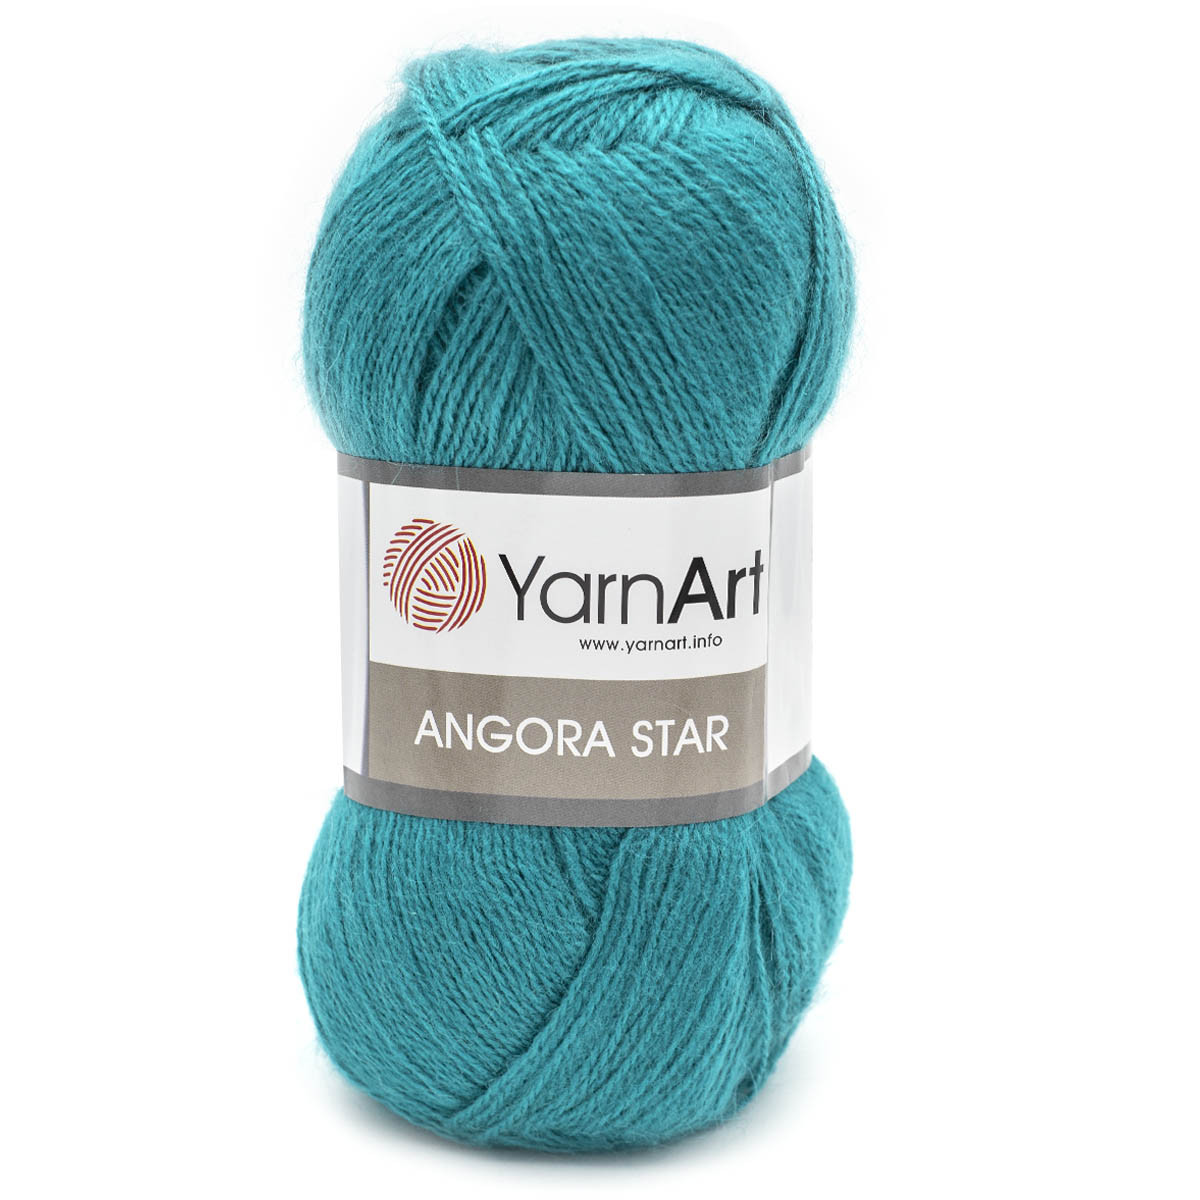 Пряжа YarnArt 'Angora Star' 100гр 500м (20% тонкая шерсть, 80% акрил) (11448 яркая бирюза)